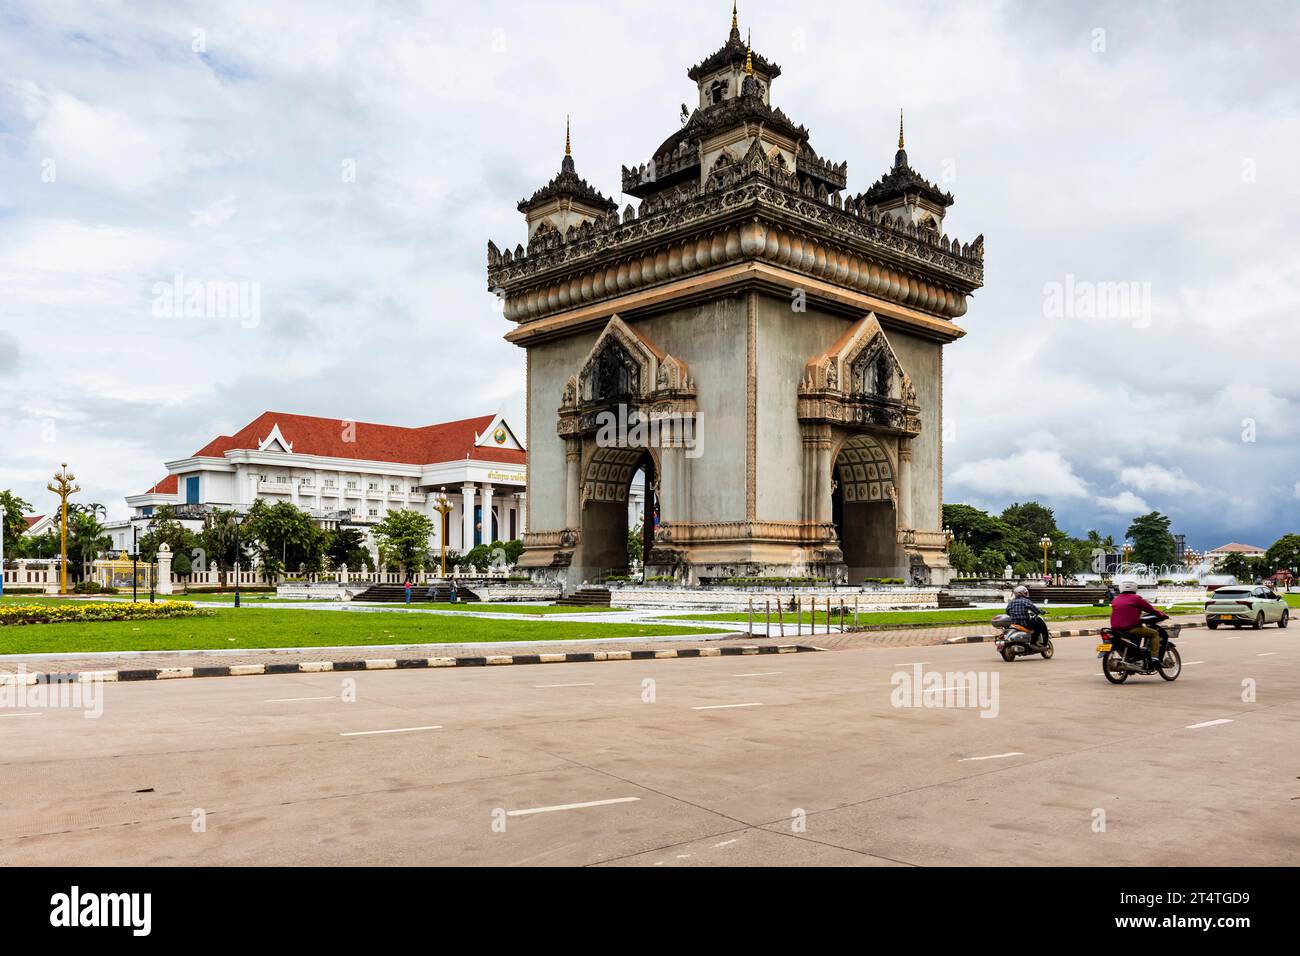 Patuxay(Patuxai), Victory Gate, Anousavary(Anosavari) monument, Prime Minister Office, Avenue Lane Xang, Vientiane, Laos, Southeast Asia, Asia Stock Photo